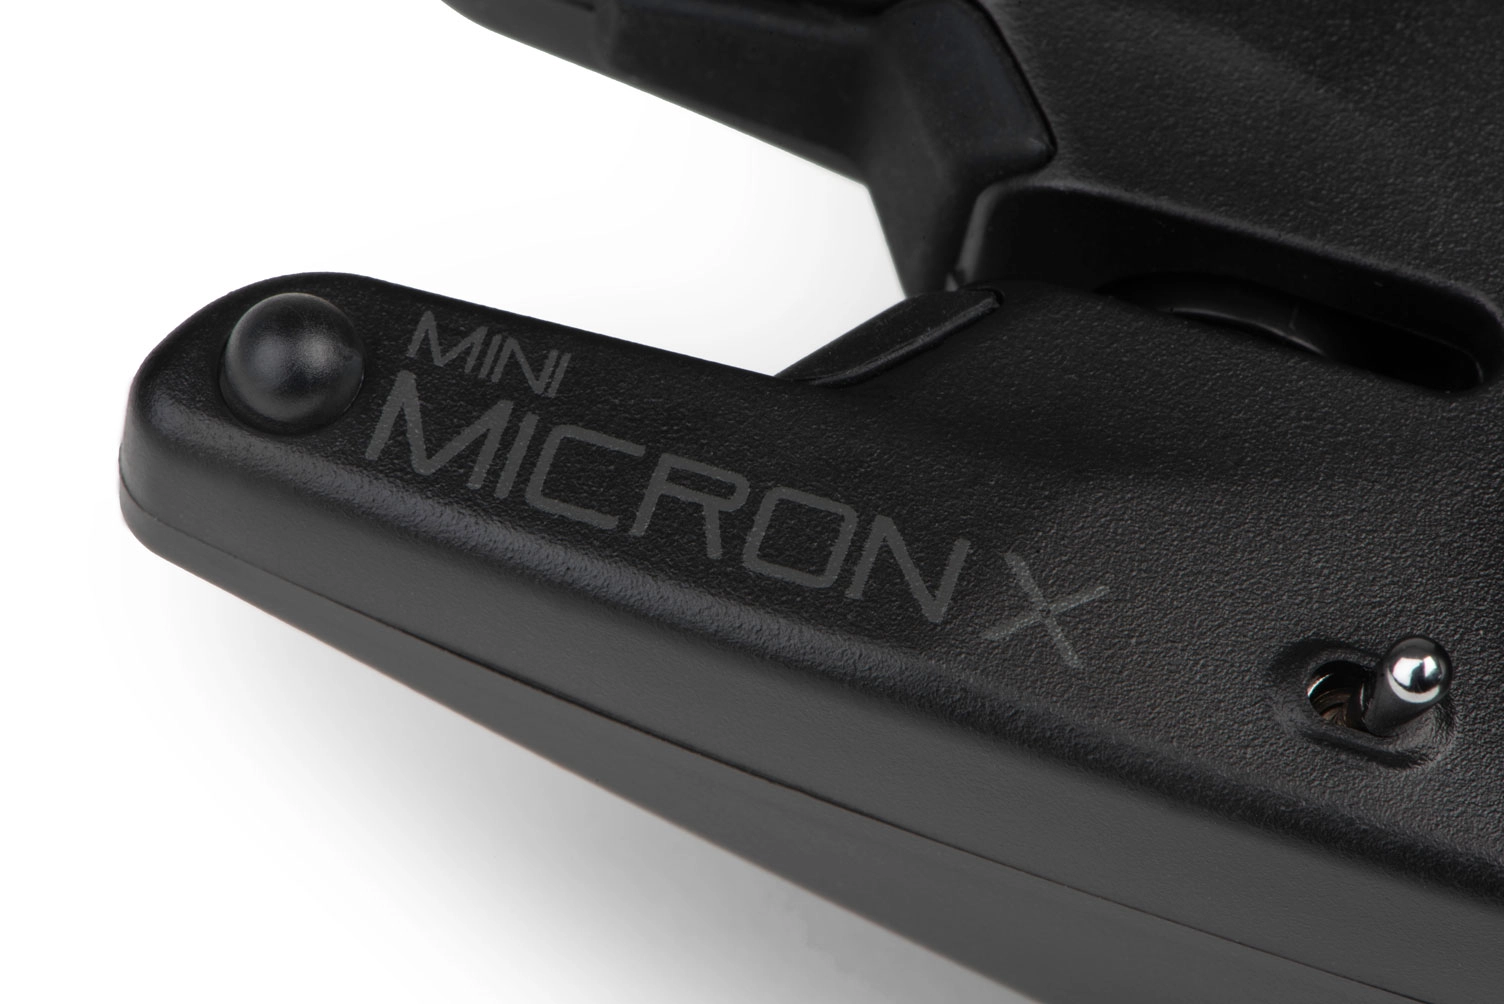 FOX Mini Micron X 3 Rod Set